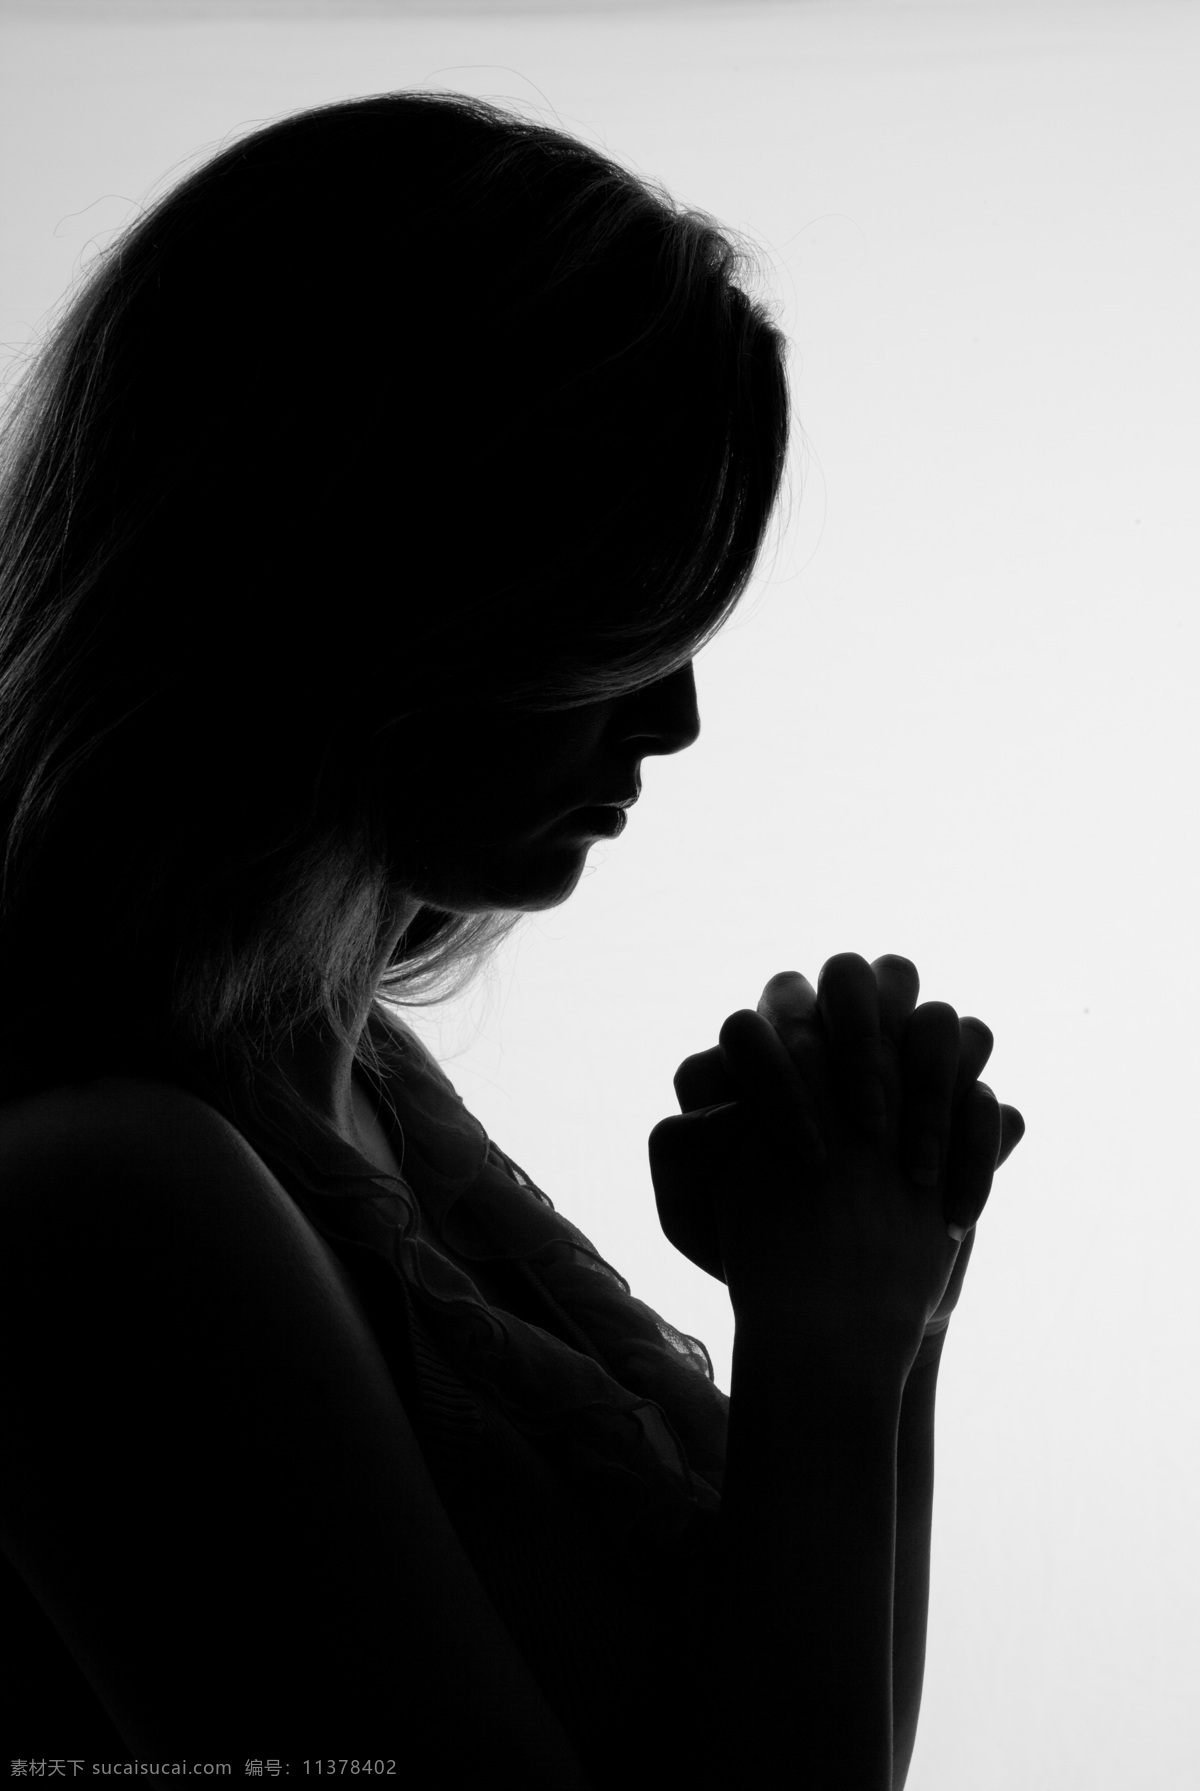 祈祷 美女图片 祝福 祷告 祈祷手势 祈祷的美女 生活人物 人物图片